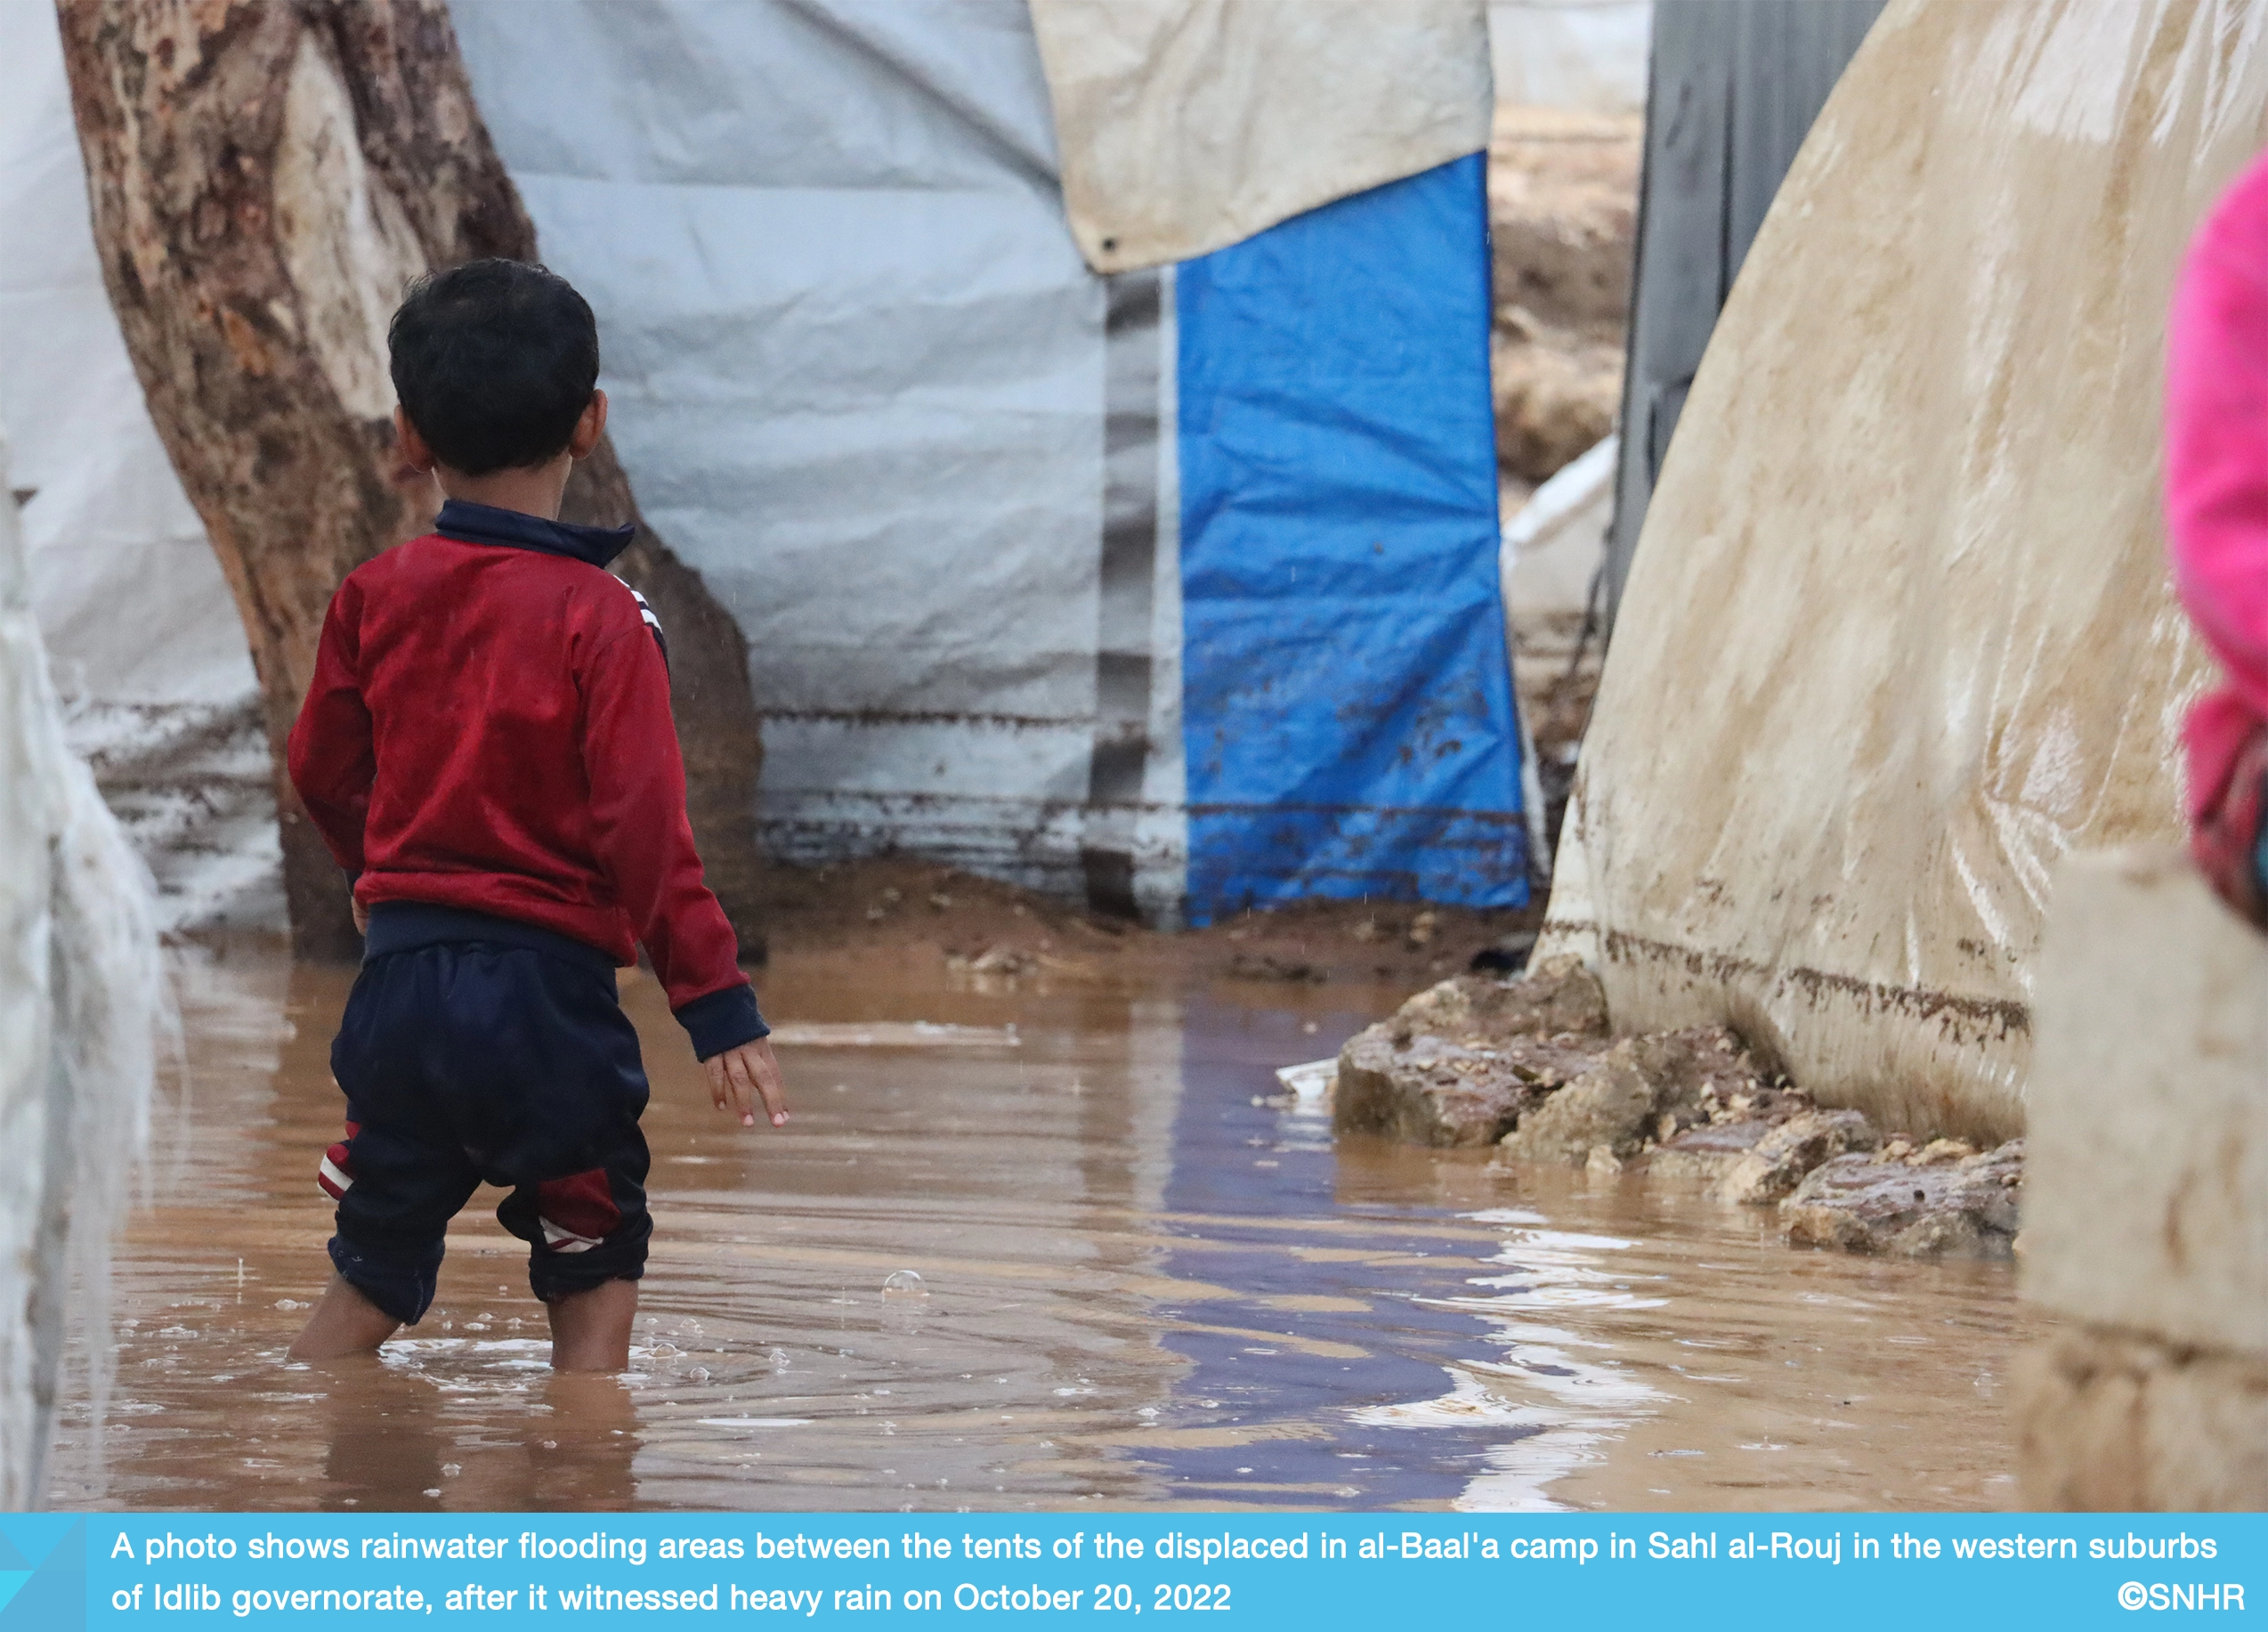 أضرار في مخيمات النازحين بريف إدلب إثر امطار غزيرة في 20-10-2022